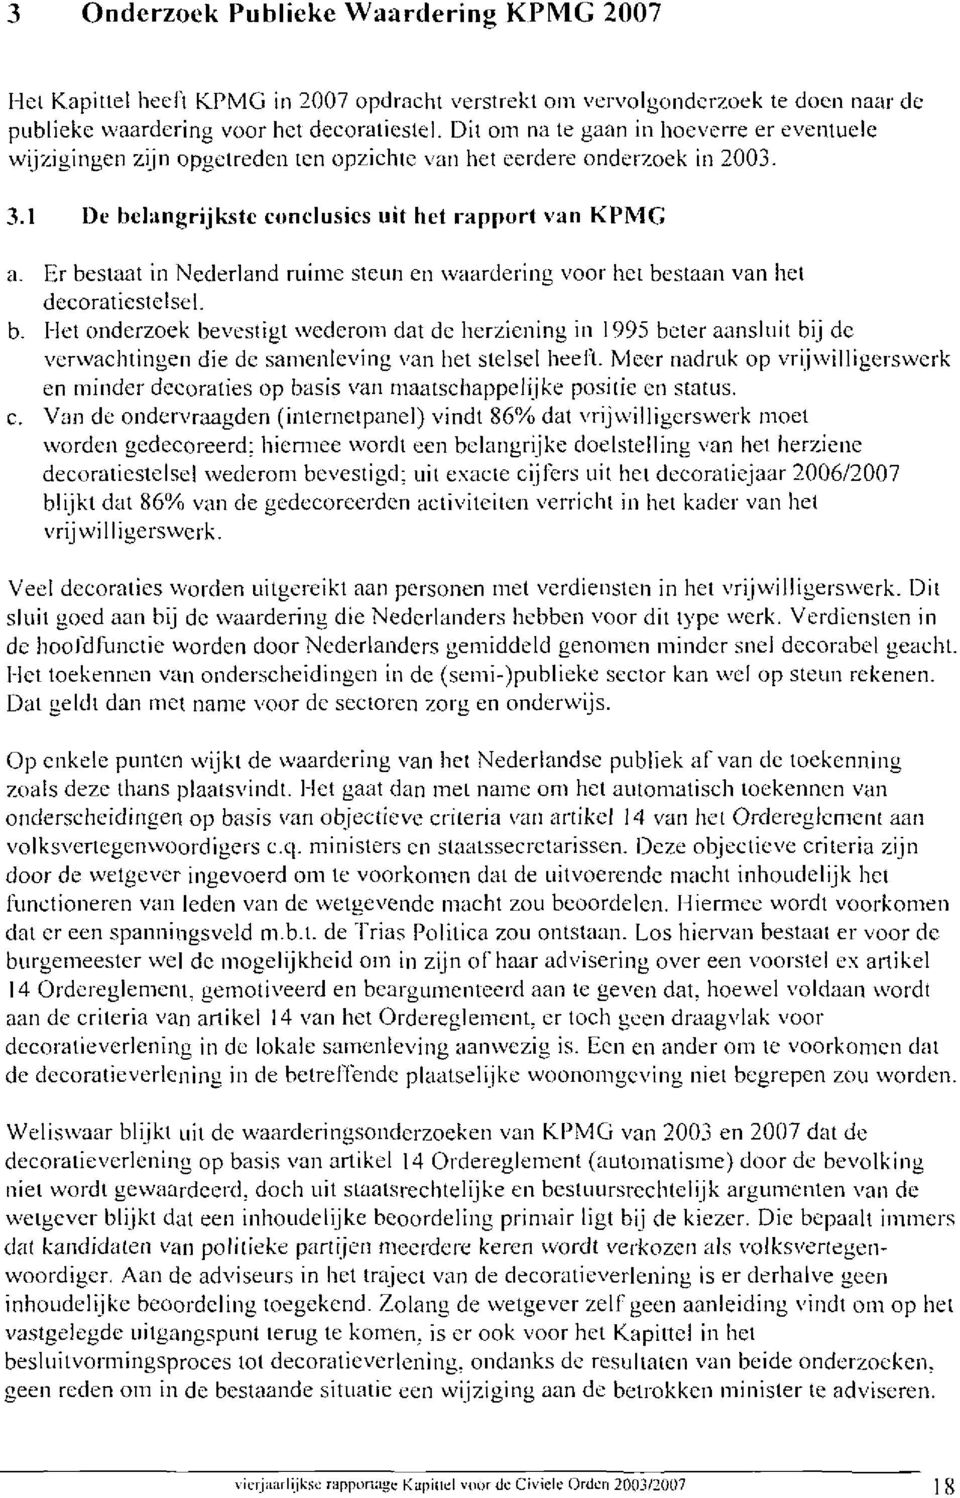 Er bestaai in Nederland ruime steun en waardering voor het bestaan van hel deeoraüeslelsel. b. Flel onderzoek bevestigt wederom dat de herziening in 1995 beter aansluit bij de verwachtingen die de samenleving van het stelsel heeli.